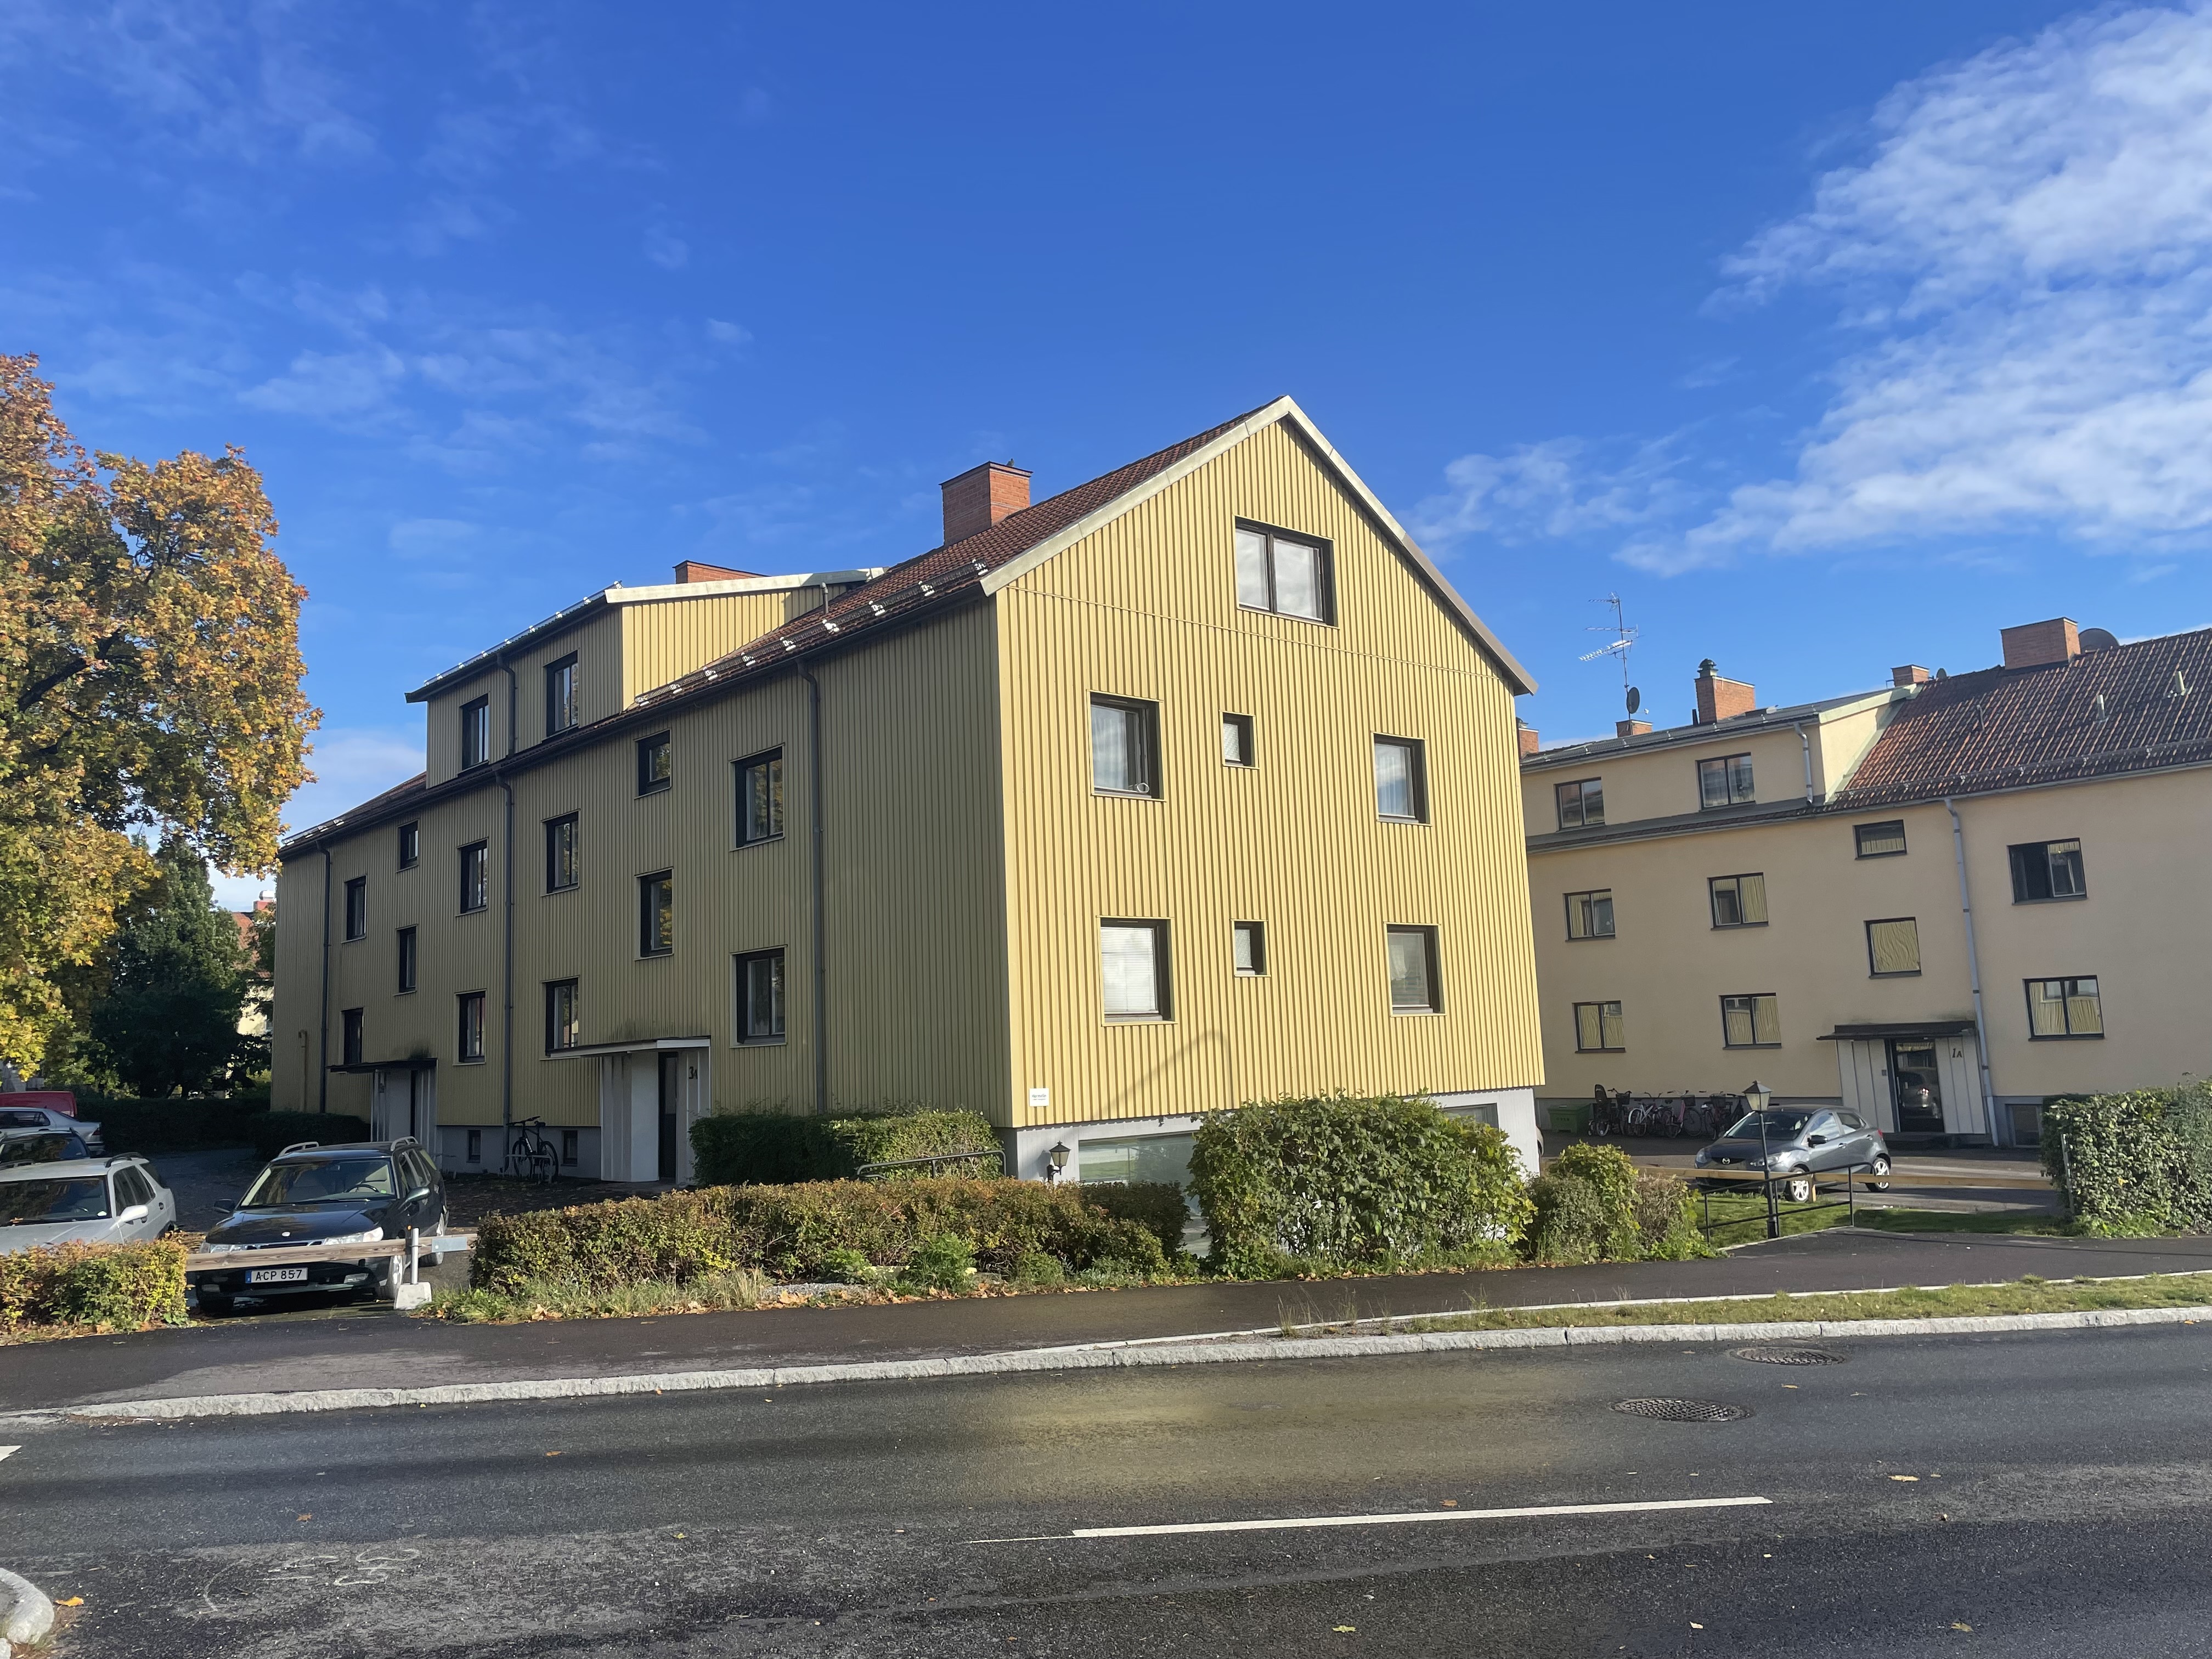 Lägenhet i Torshälla, Sverige, Riktargatan 3 A